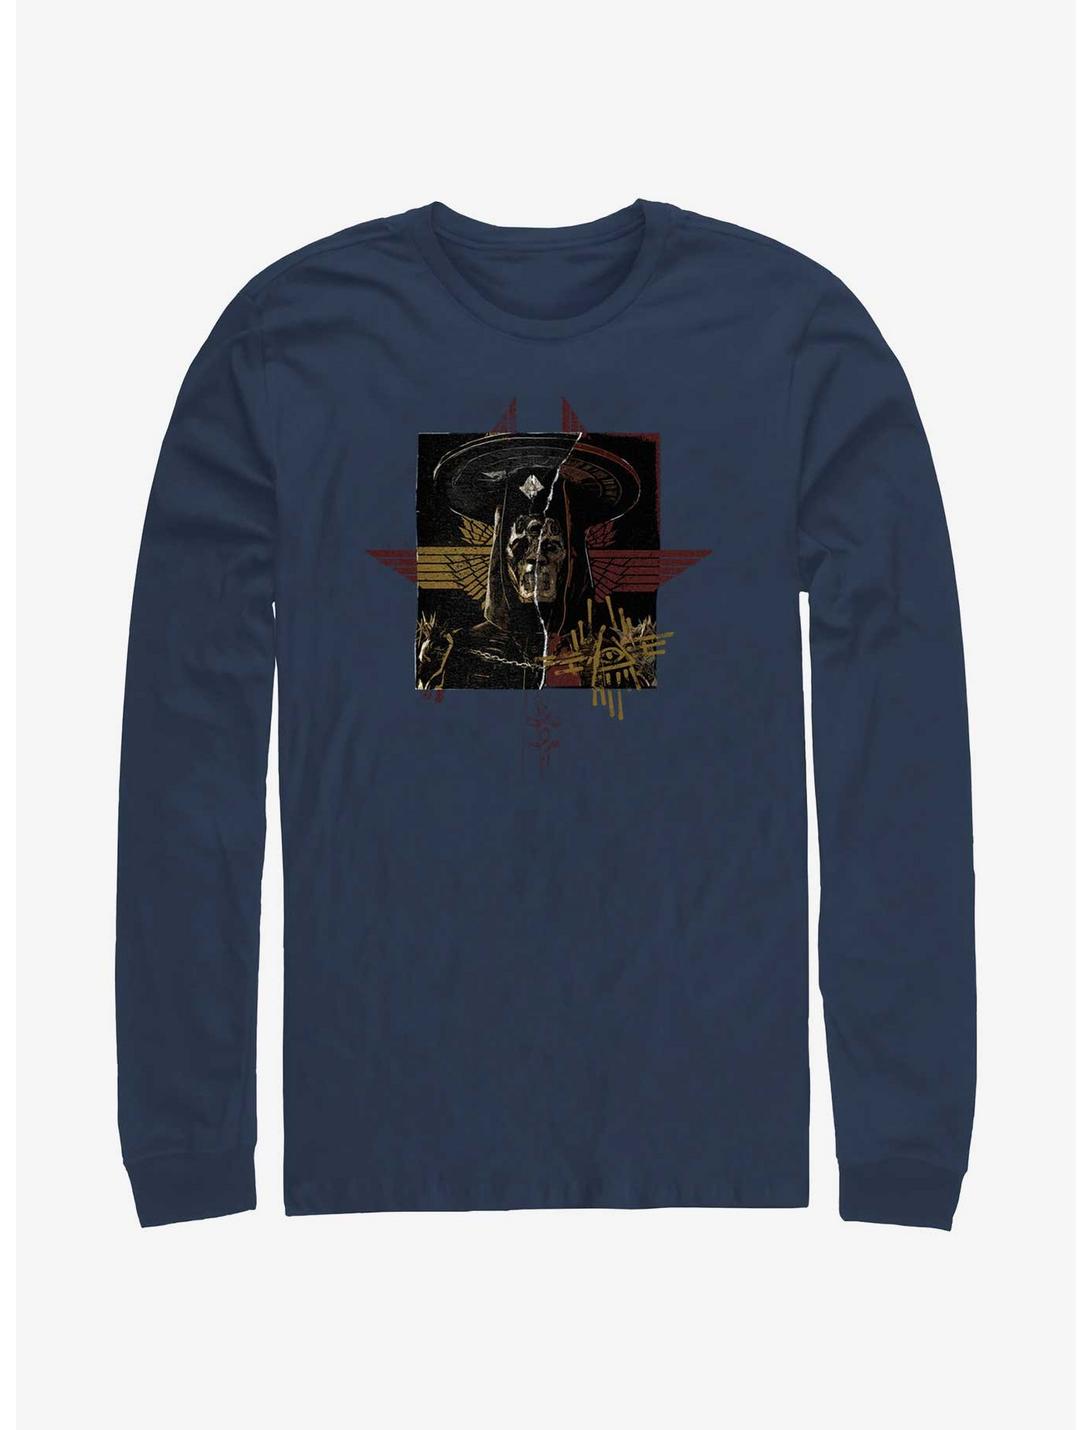 Rebel Moon Priest Long-Sleeve T-Shirt, NAVY, hi-res